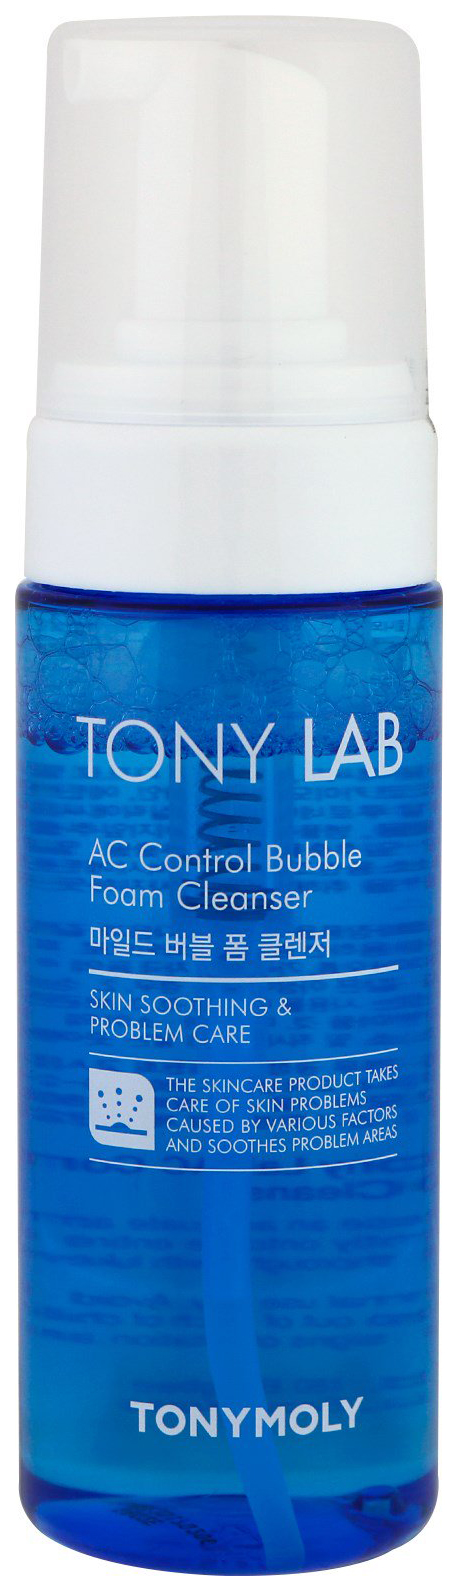 Пенка-мусс для умывания TONY MOLY Tony Lab AC Control для проблемной кожи, 150 мл пенка для умывания cetaphil матирующая derma control 237 мл